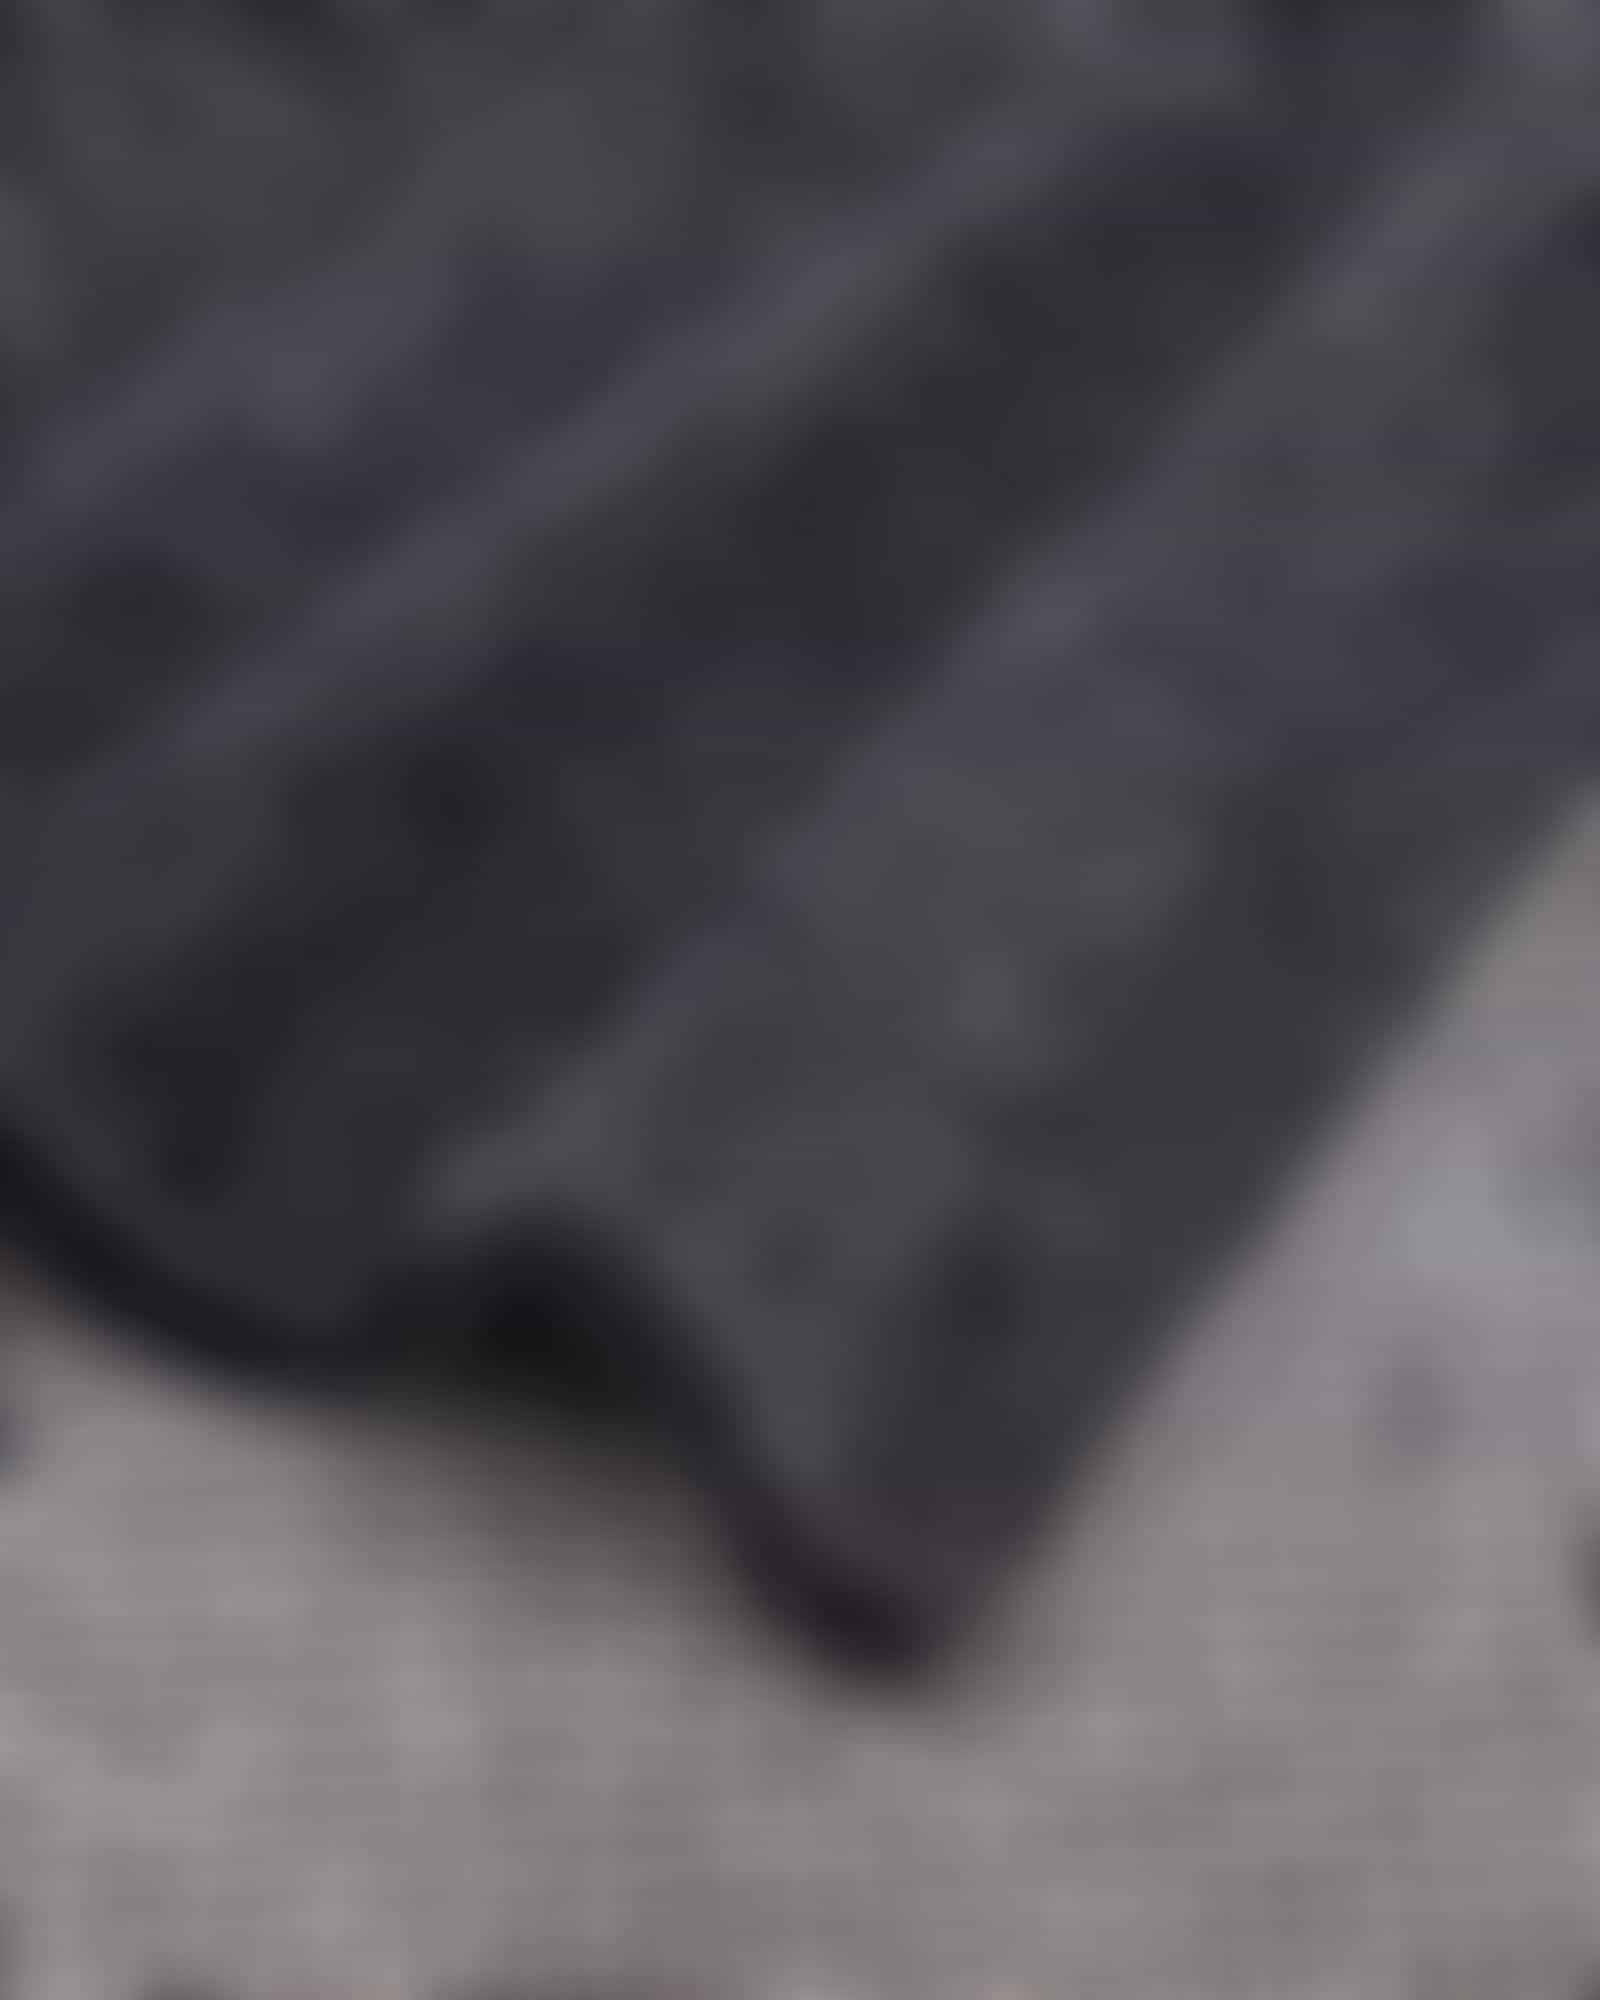 Cawö Zoom Allover 122 - Farbe: schwarz - 97 - Duschtuch 80x150 cm